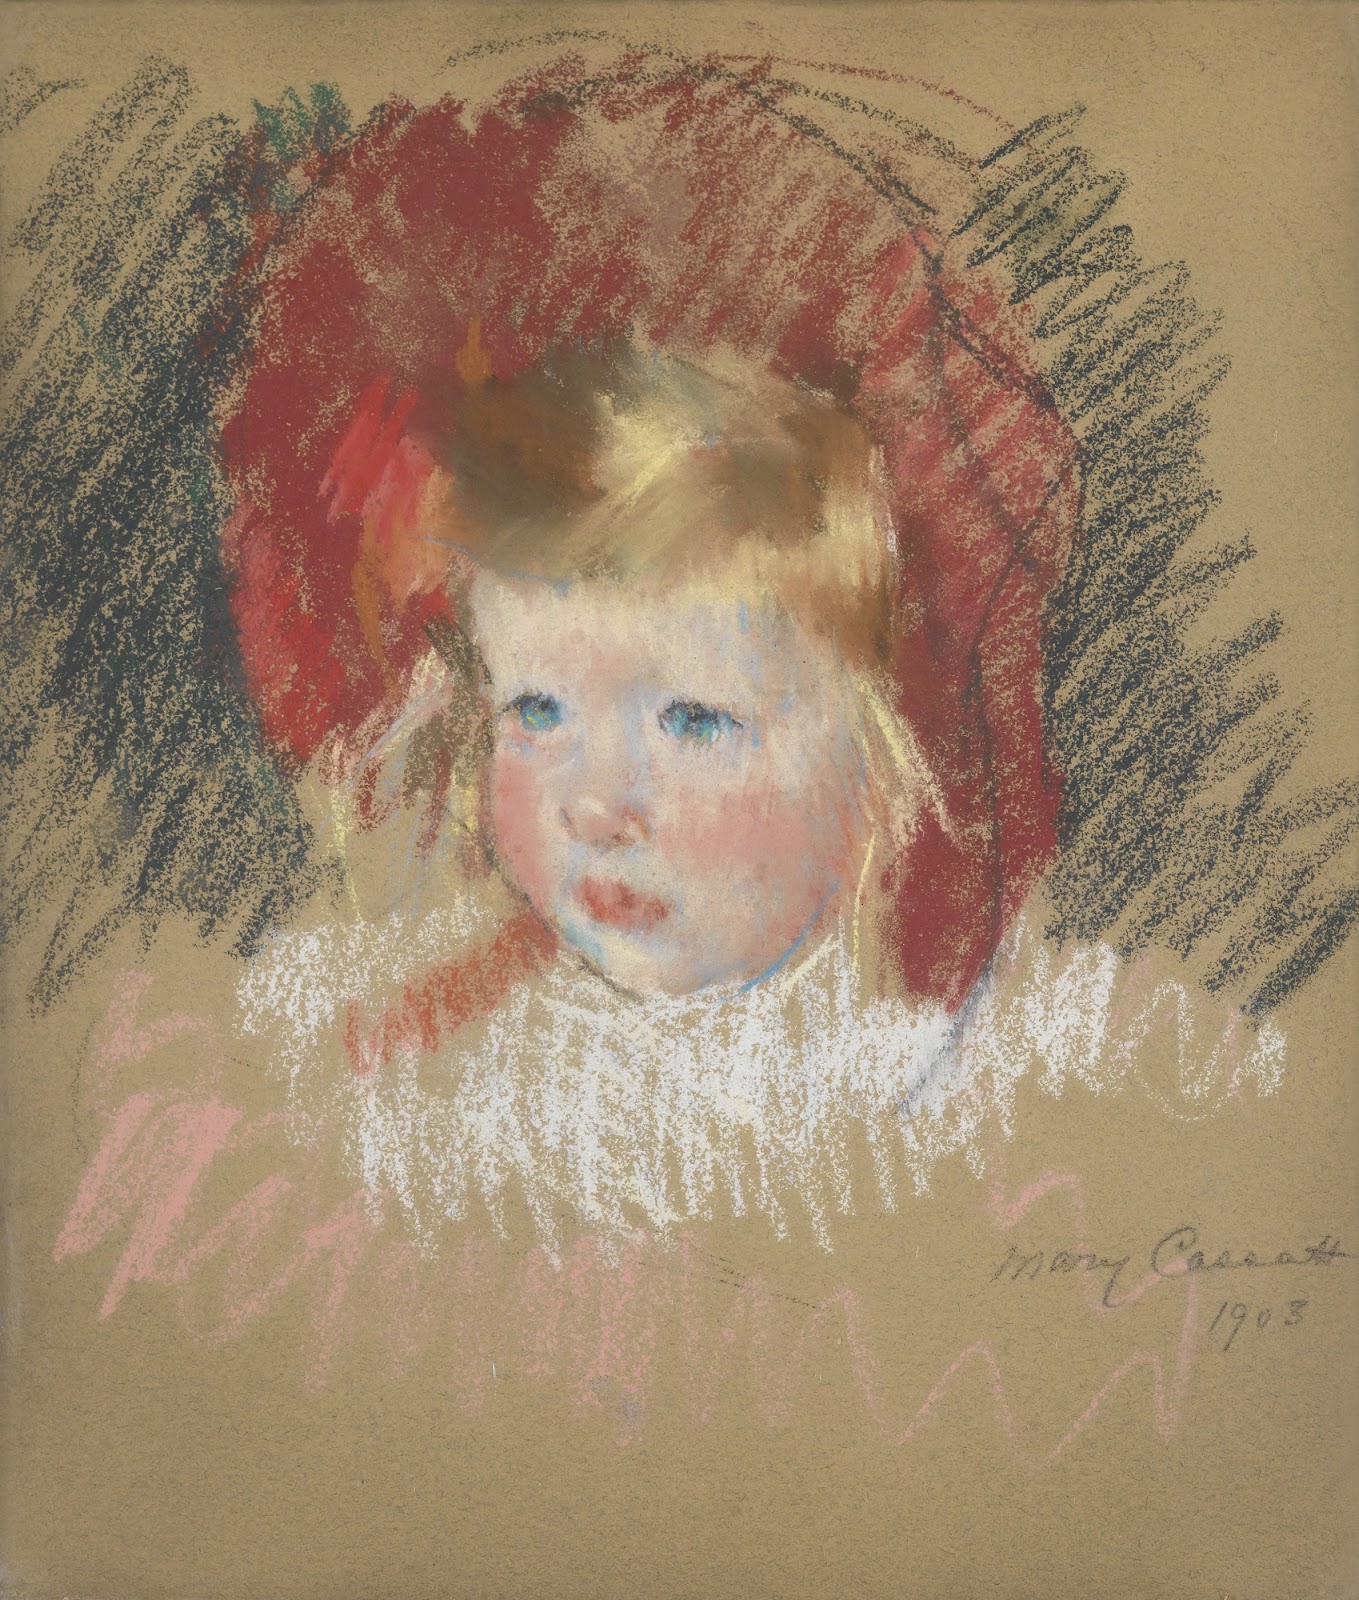 Mary+Cassatt-1844-1926 (225).jpg